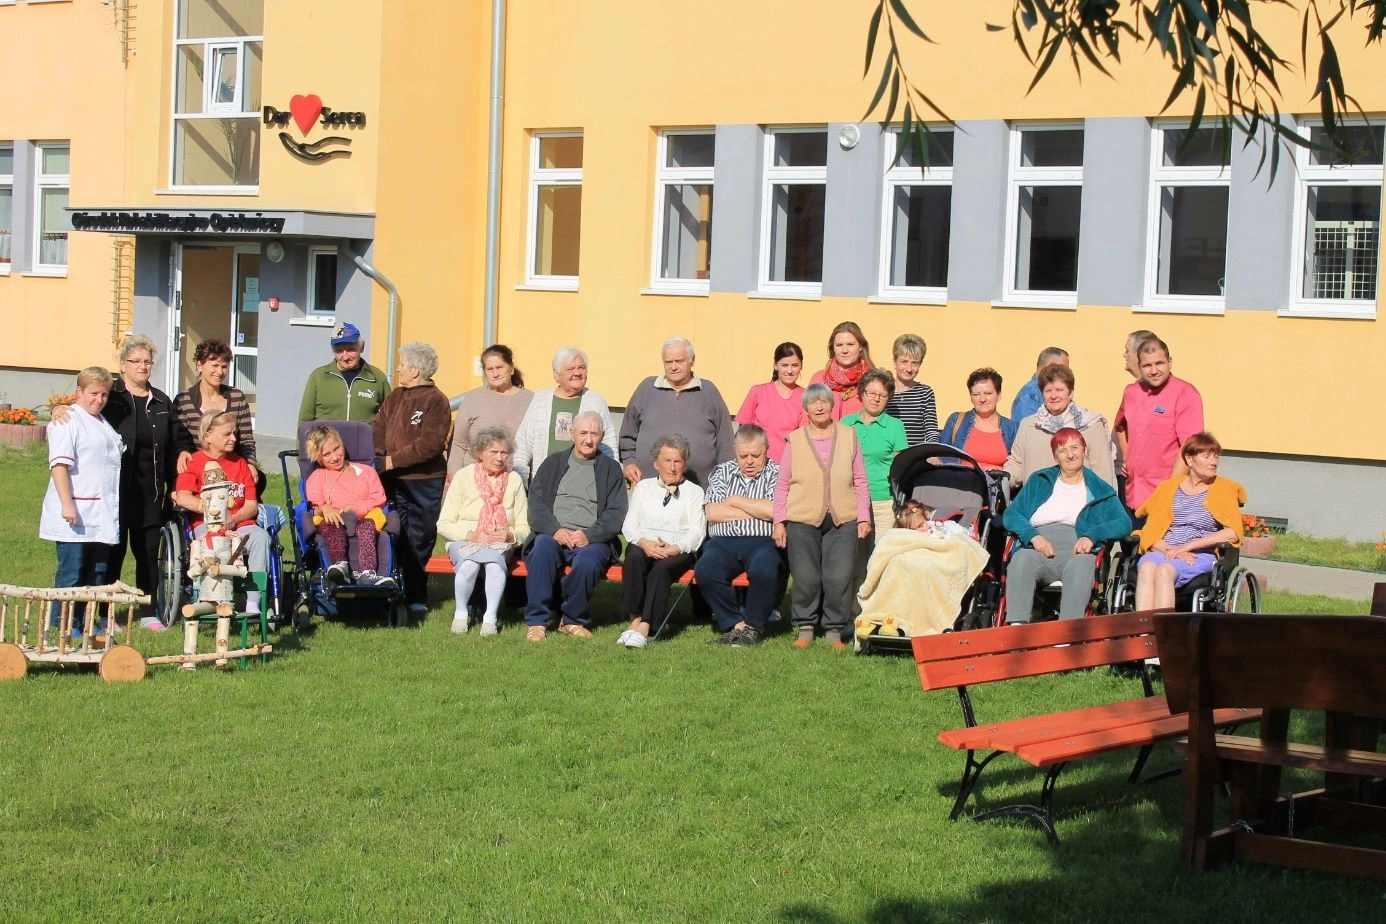 Nasi podopieczni wraz z pracownikami przed budynkiem Ośrodka Rehabilitacyjno-Opiekuńczego „Dar Serca” w Czerninie.